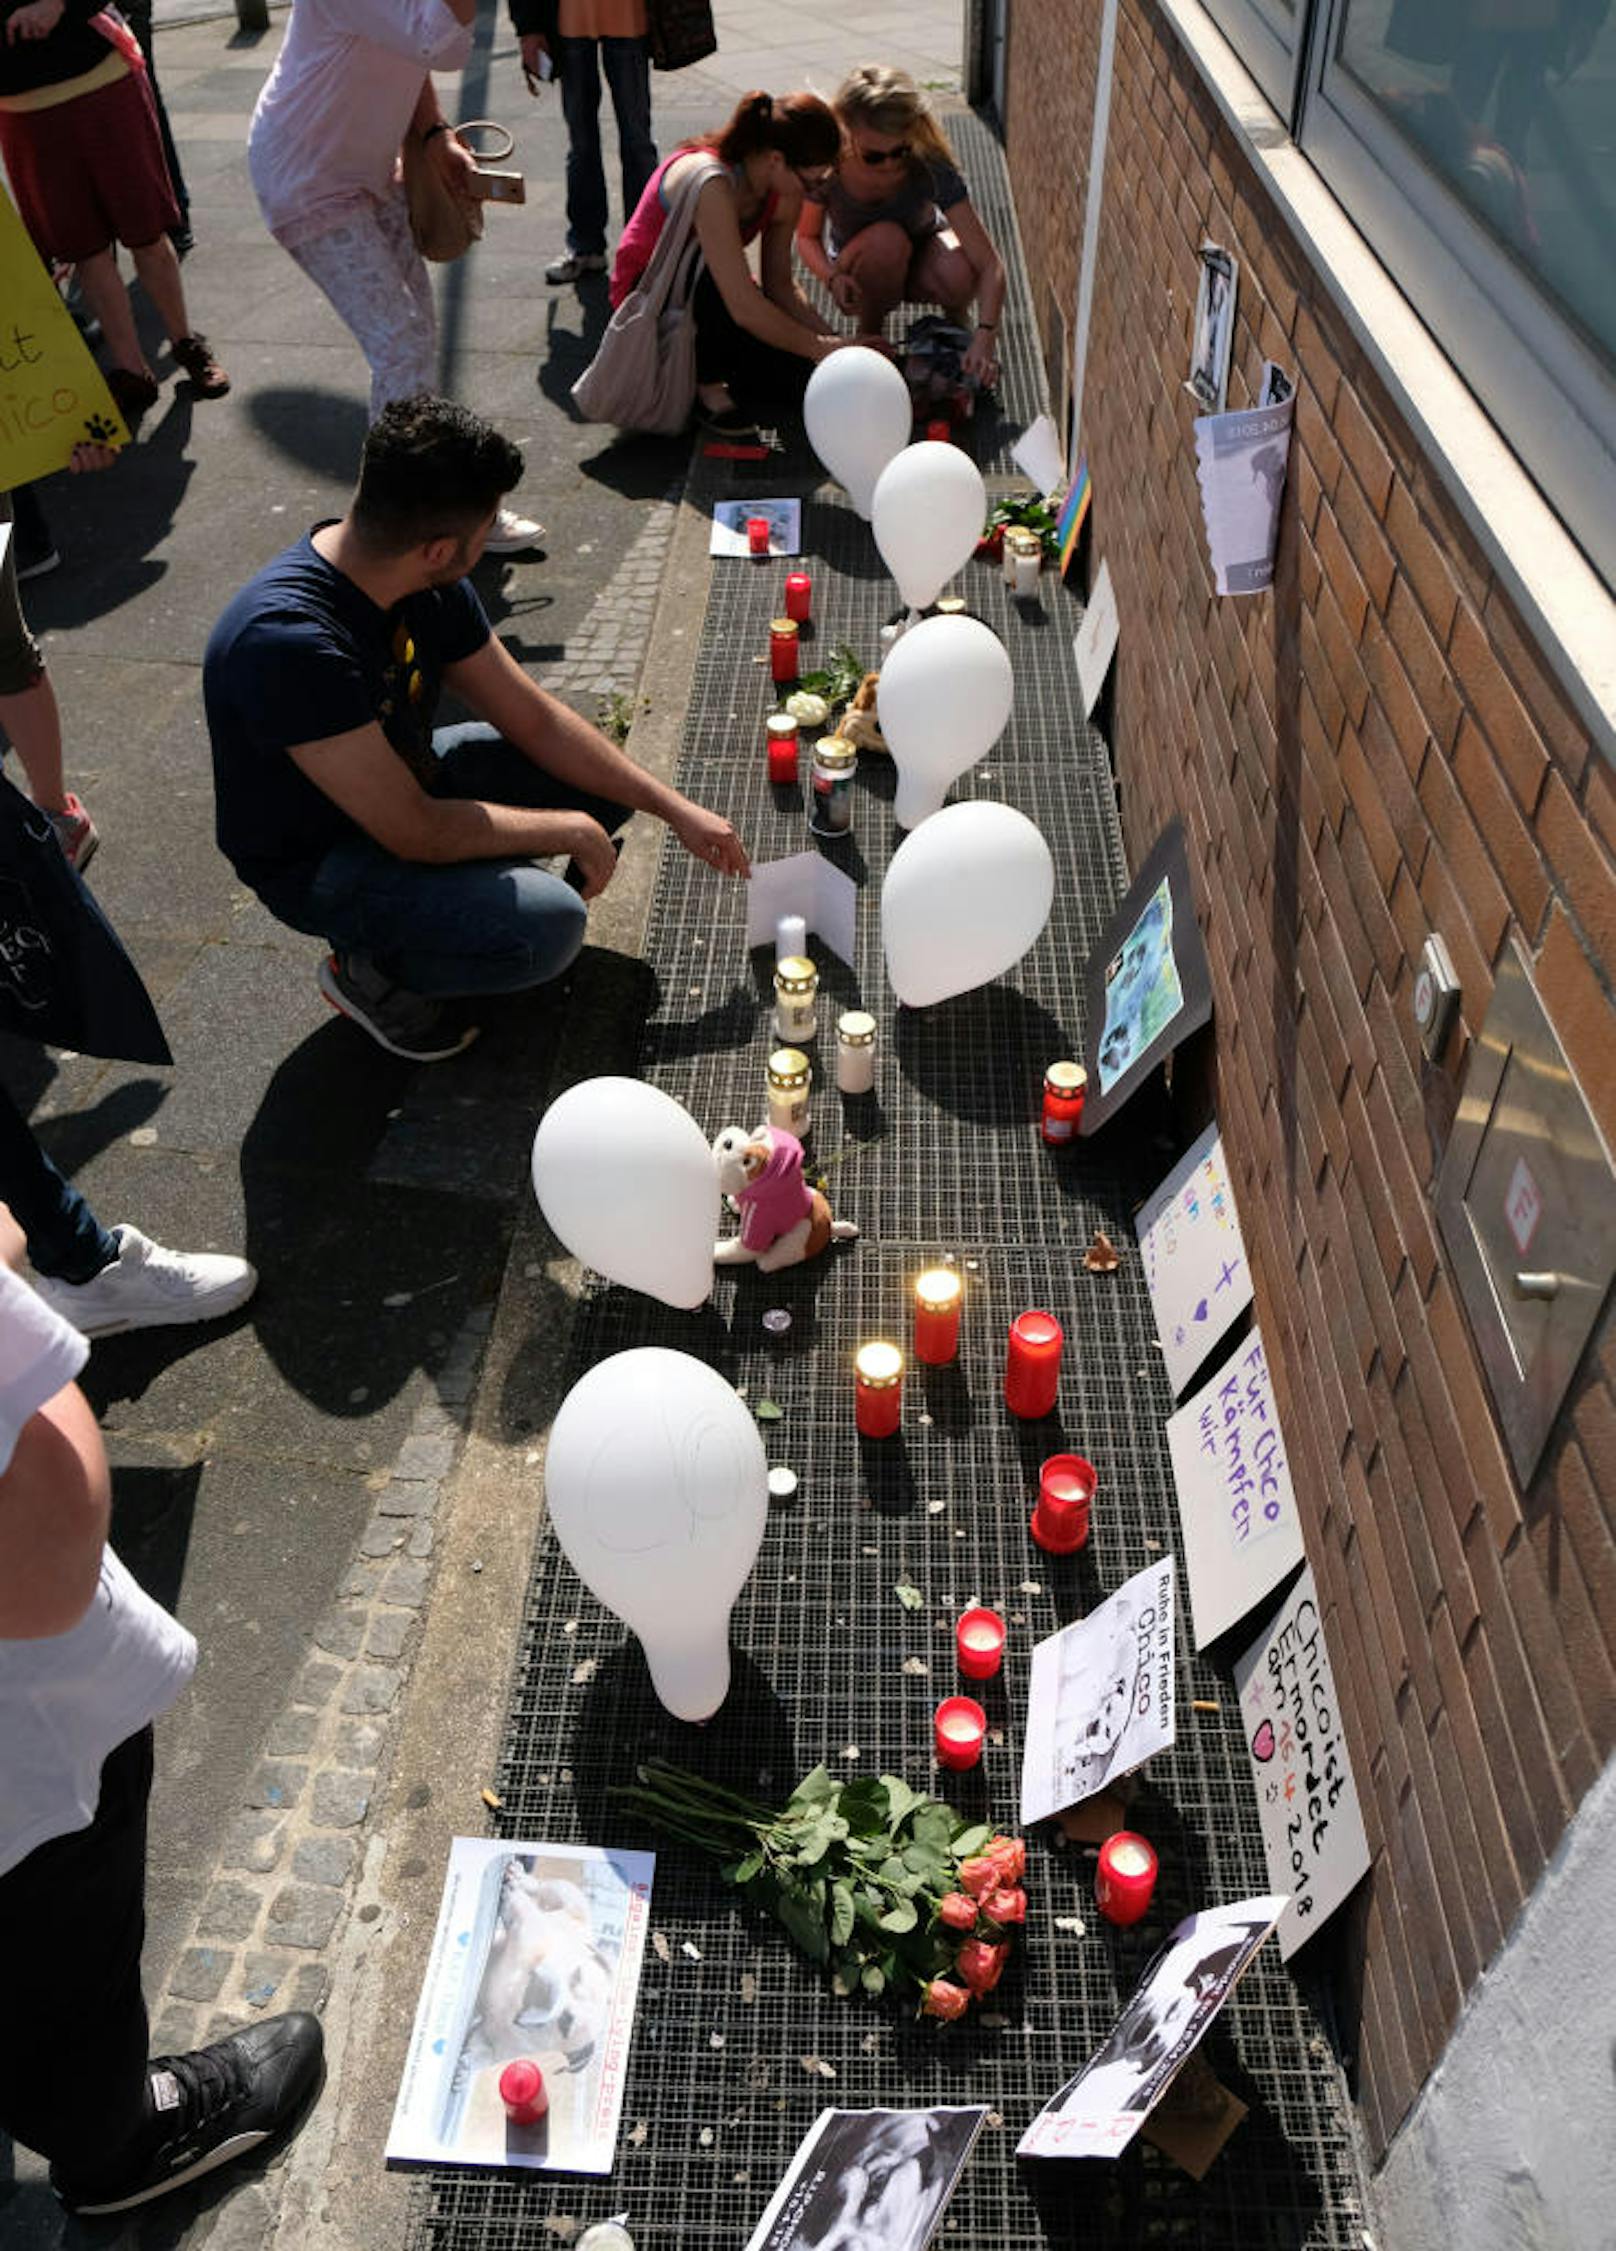 Am Sonntag versammelten sich 80 Menschen vor dem Ordnungsamt in Hannover, legten Blumen nieder, züdneten Kerzen an und feierten "Chico" als "Helden" und "Freiheitskämpfer".